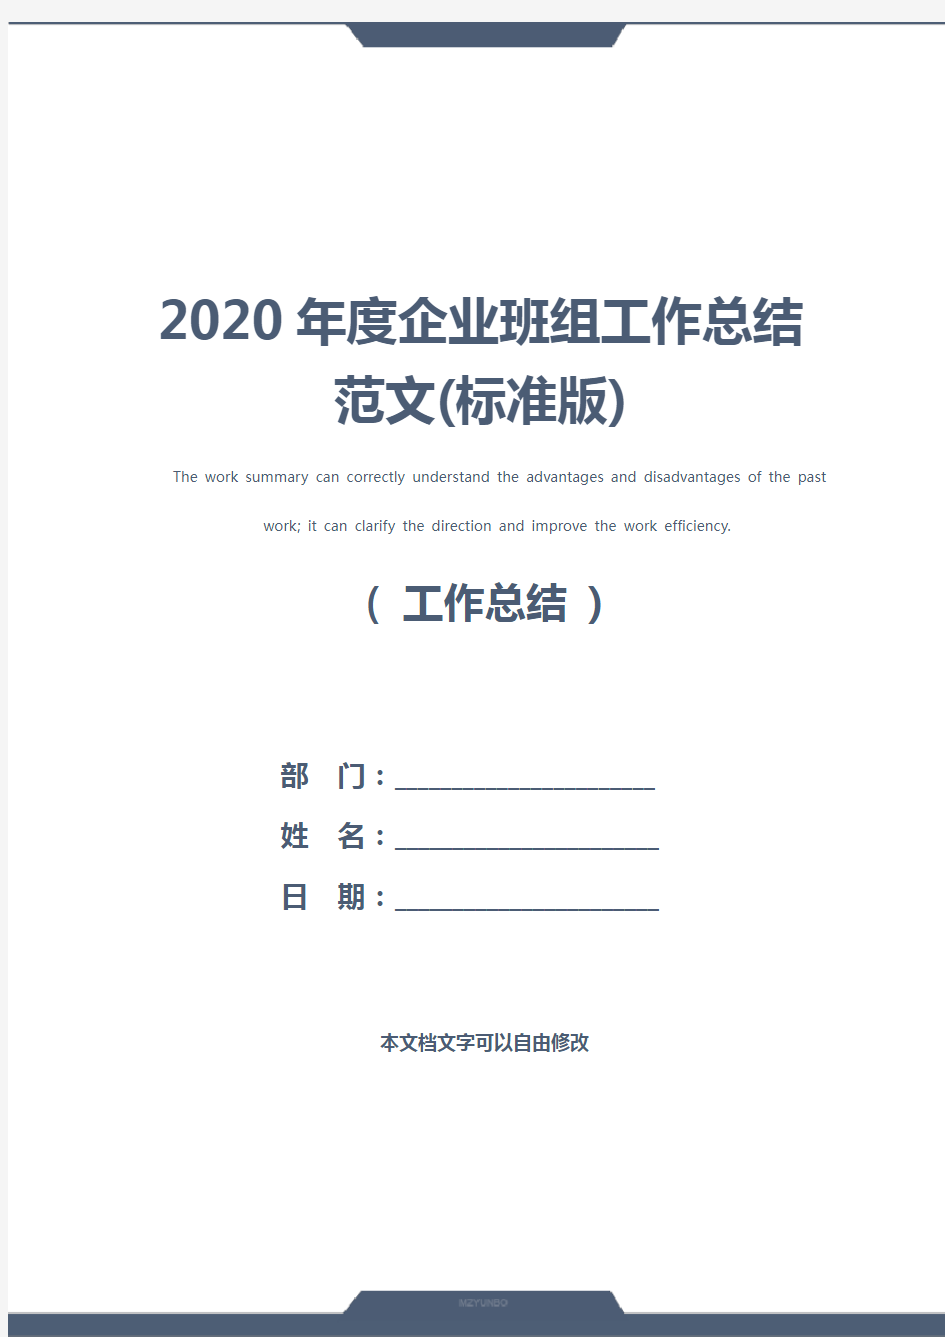 2020年度企业班组工作总结范文(标准版)